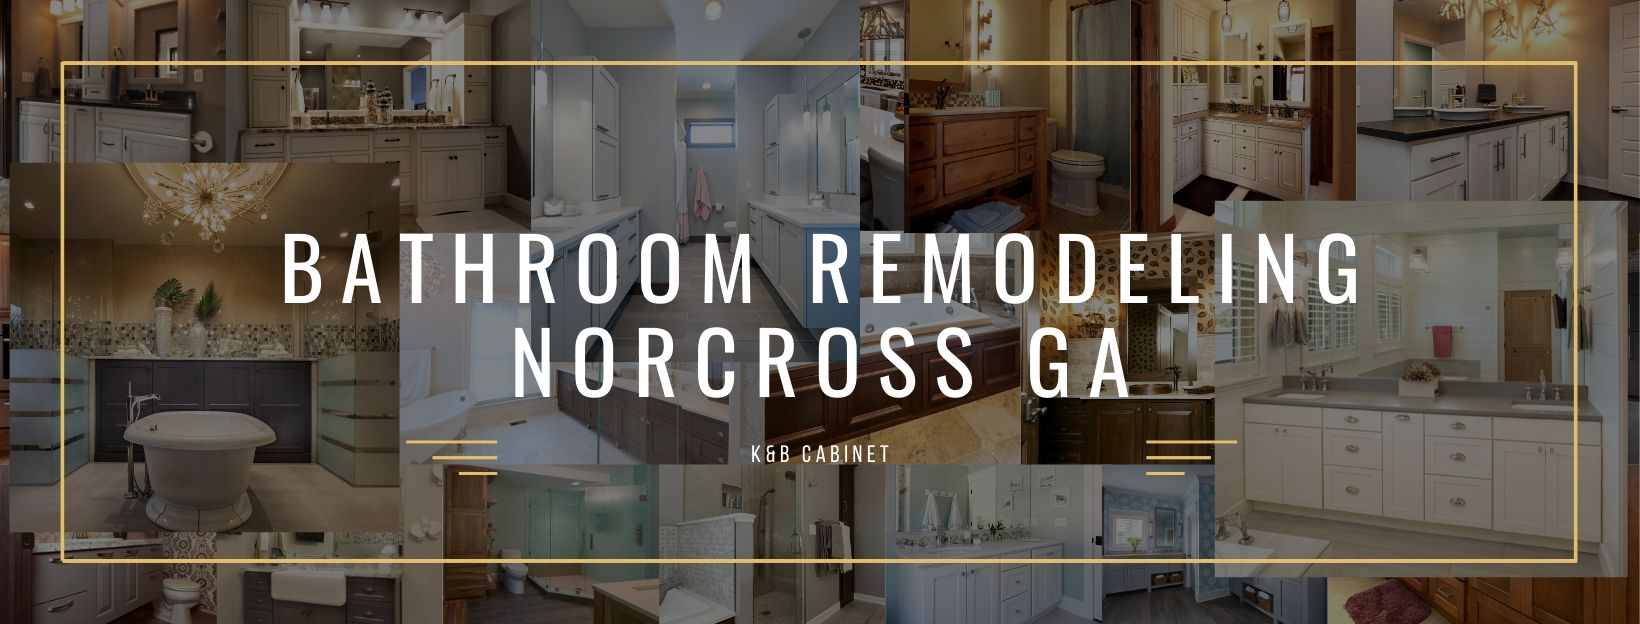 Bathroom Remodeling Norcross GA